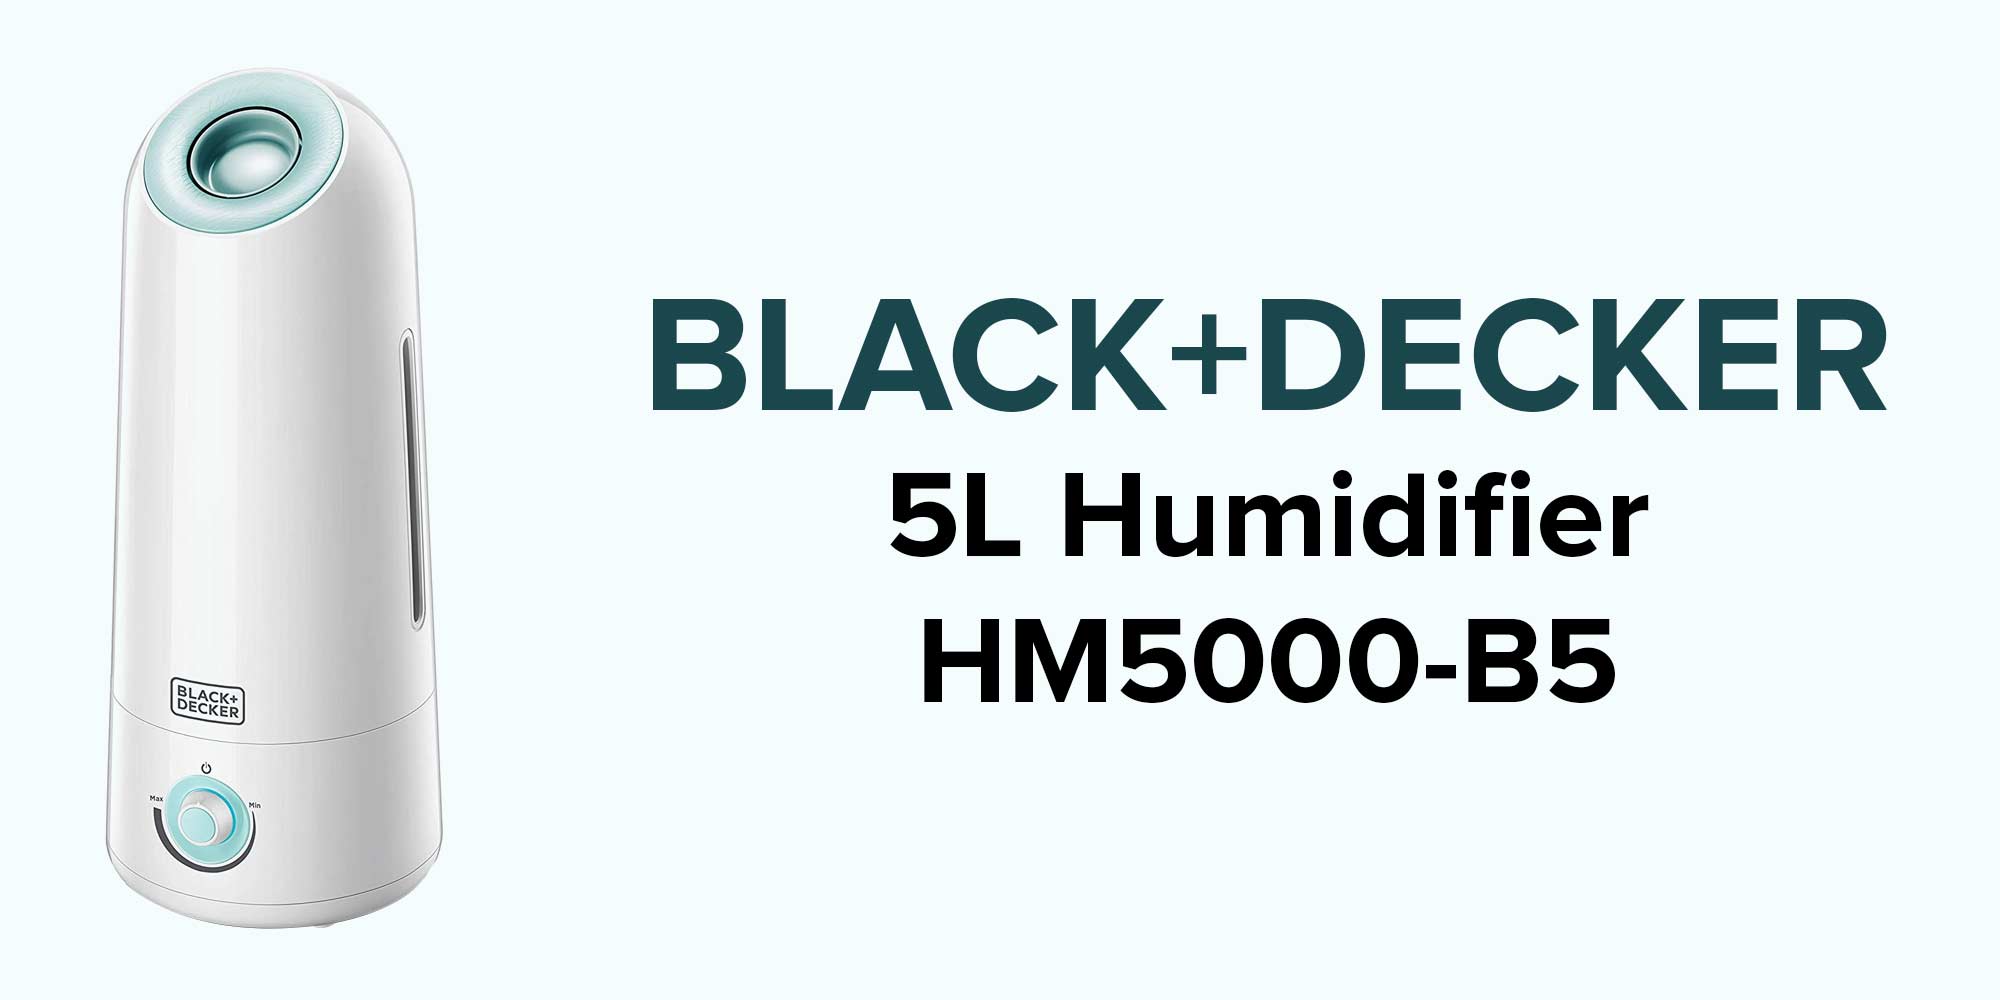  Black & Decker Hm5000-B5 | Black & Decker Air Humidifier
